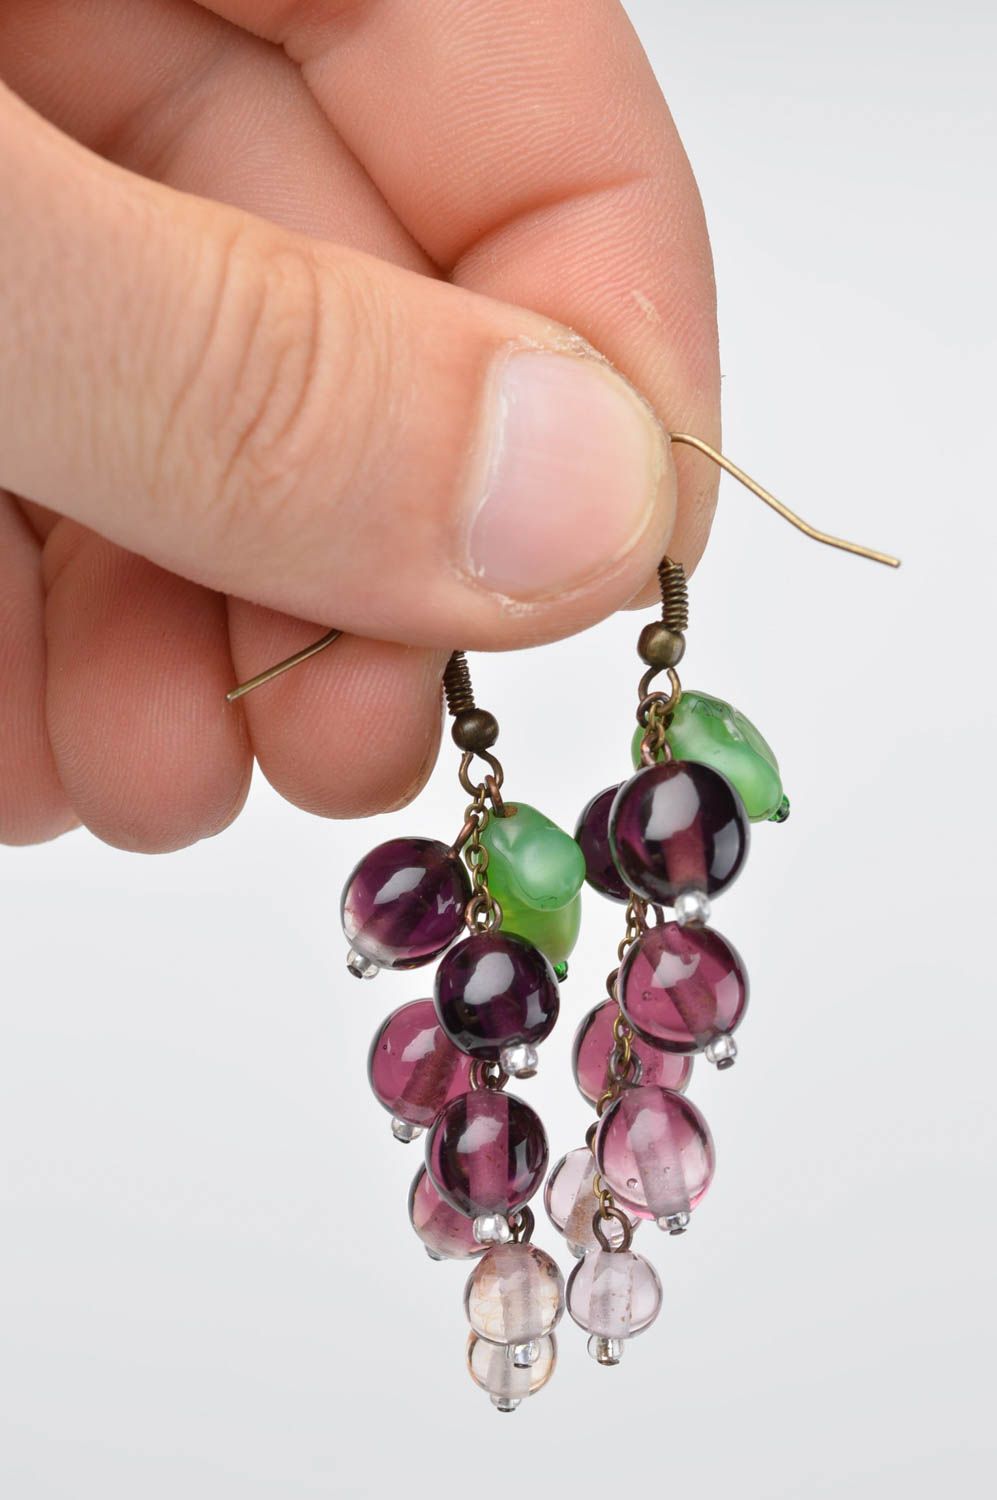 Unusual handmade glass earrings best earrings for women fashion accessories photo 5